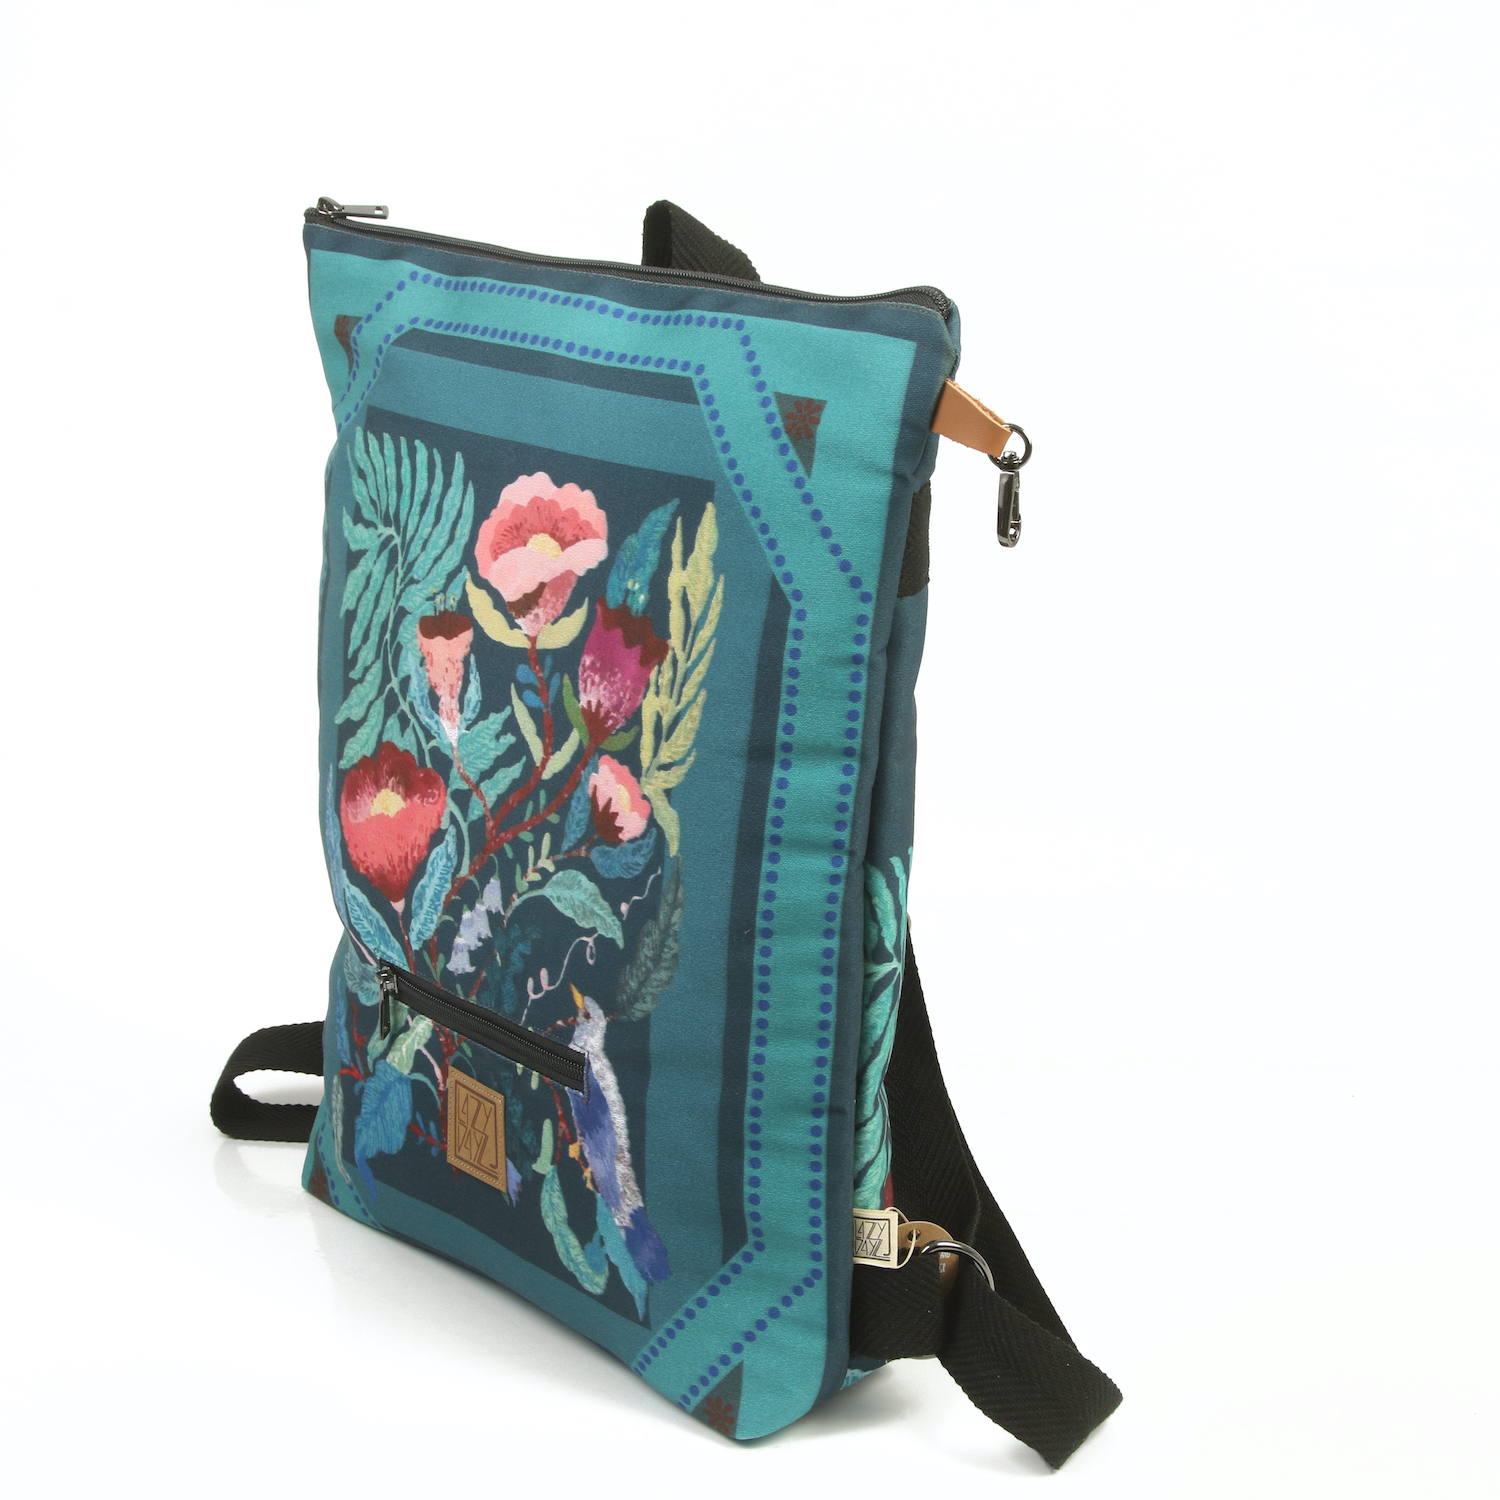 LazyDayz Designs Backpack γυναικείος σάκος πλάτης χειροποίητος bb0508b